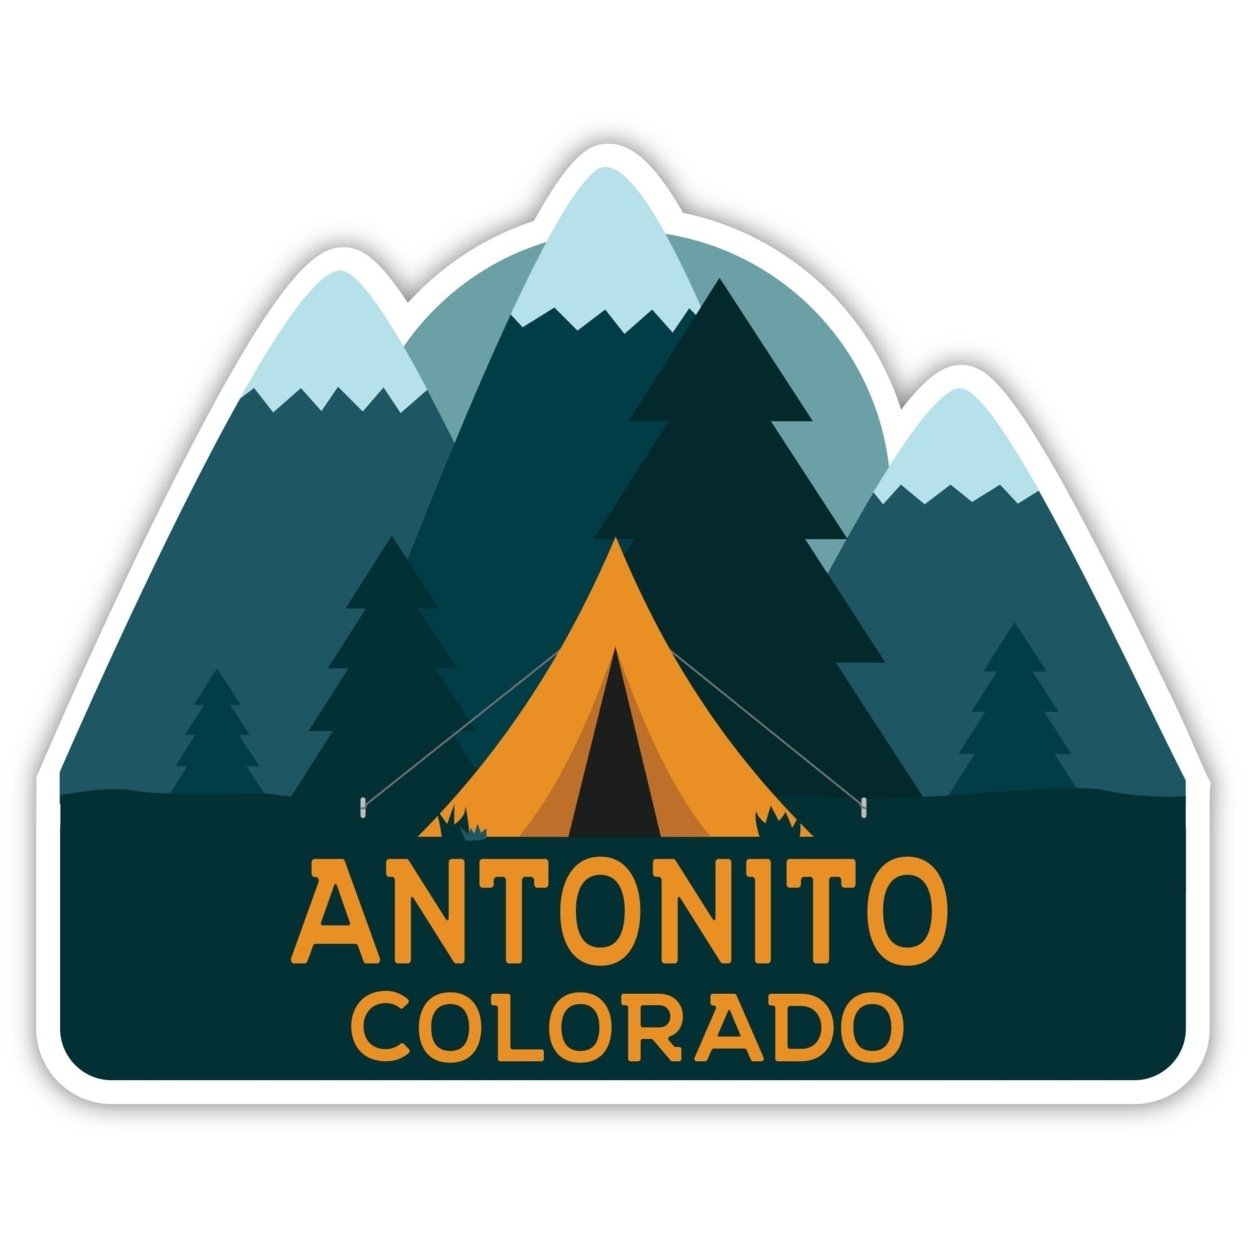 Antonito Colorado Souvenir Decorative Stickers (Choose Theme And Size) - Single Unit, 12-Inch, Tent